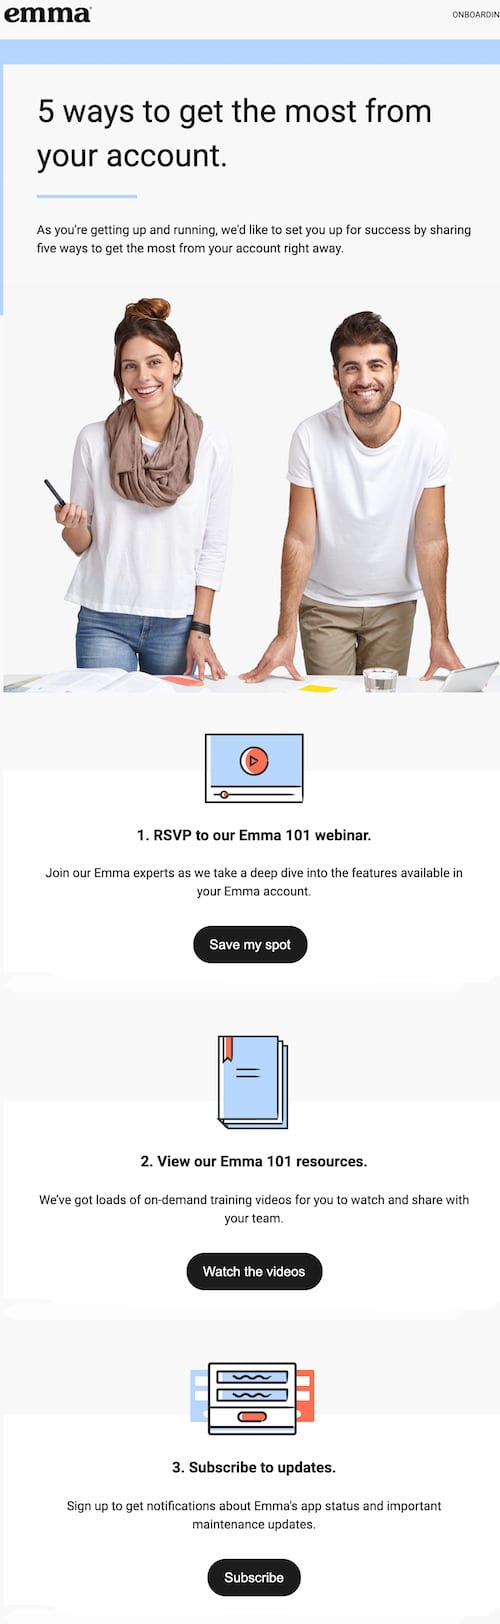 esempio di posta elettronica basata sul contenuto: ecco un esempio di posta elettronica automatizzata basata sul contenuto di Emma.